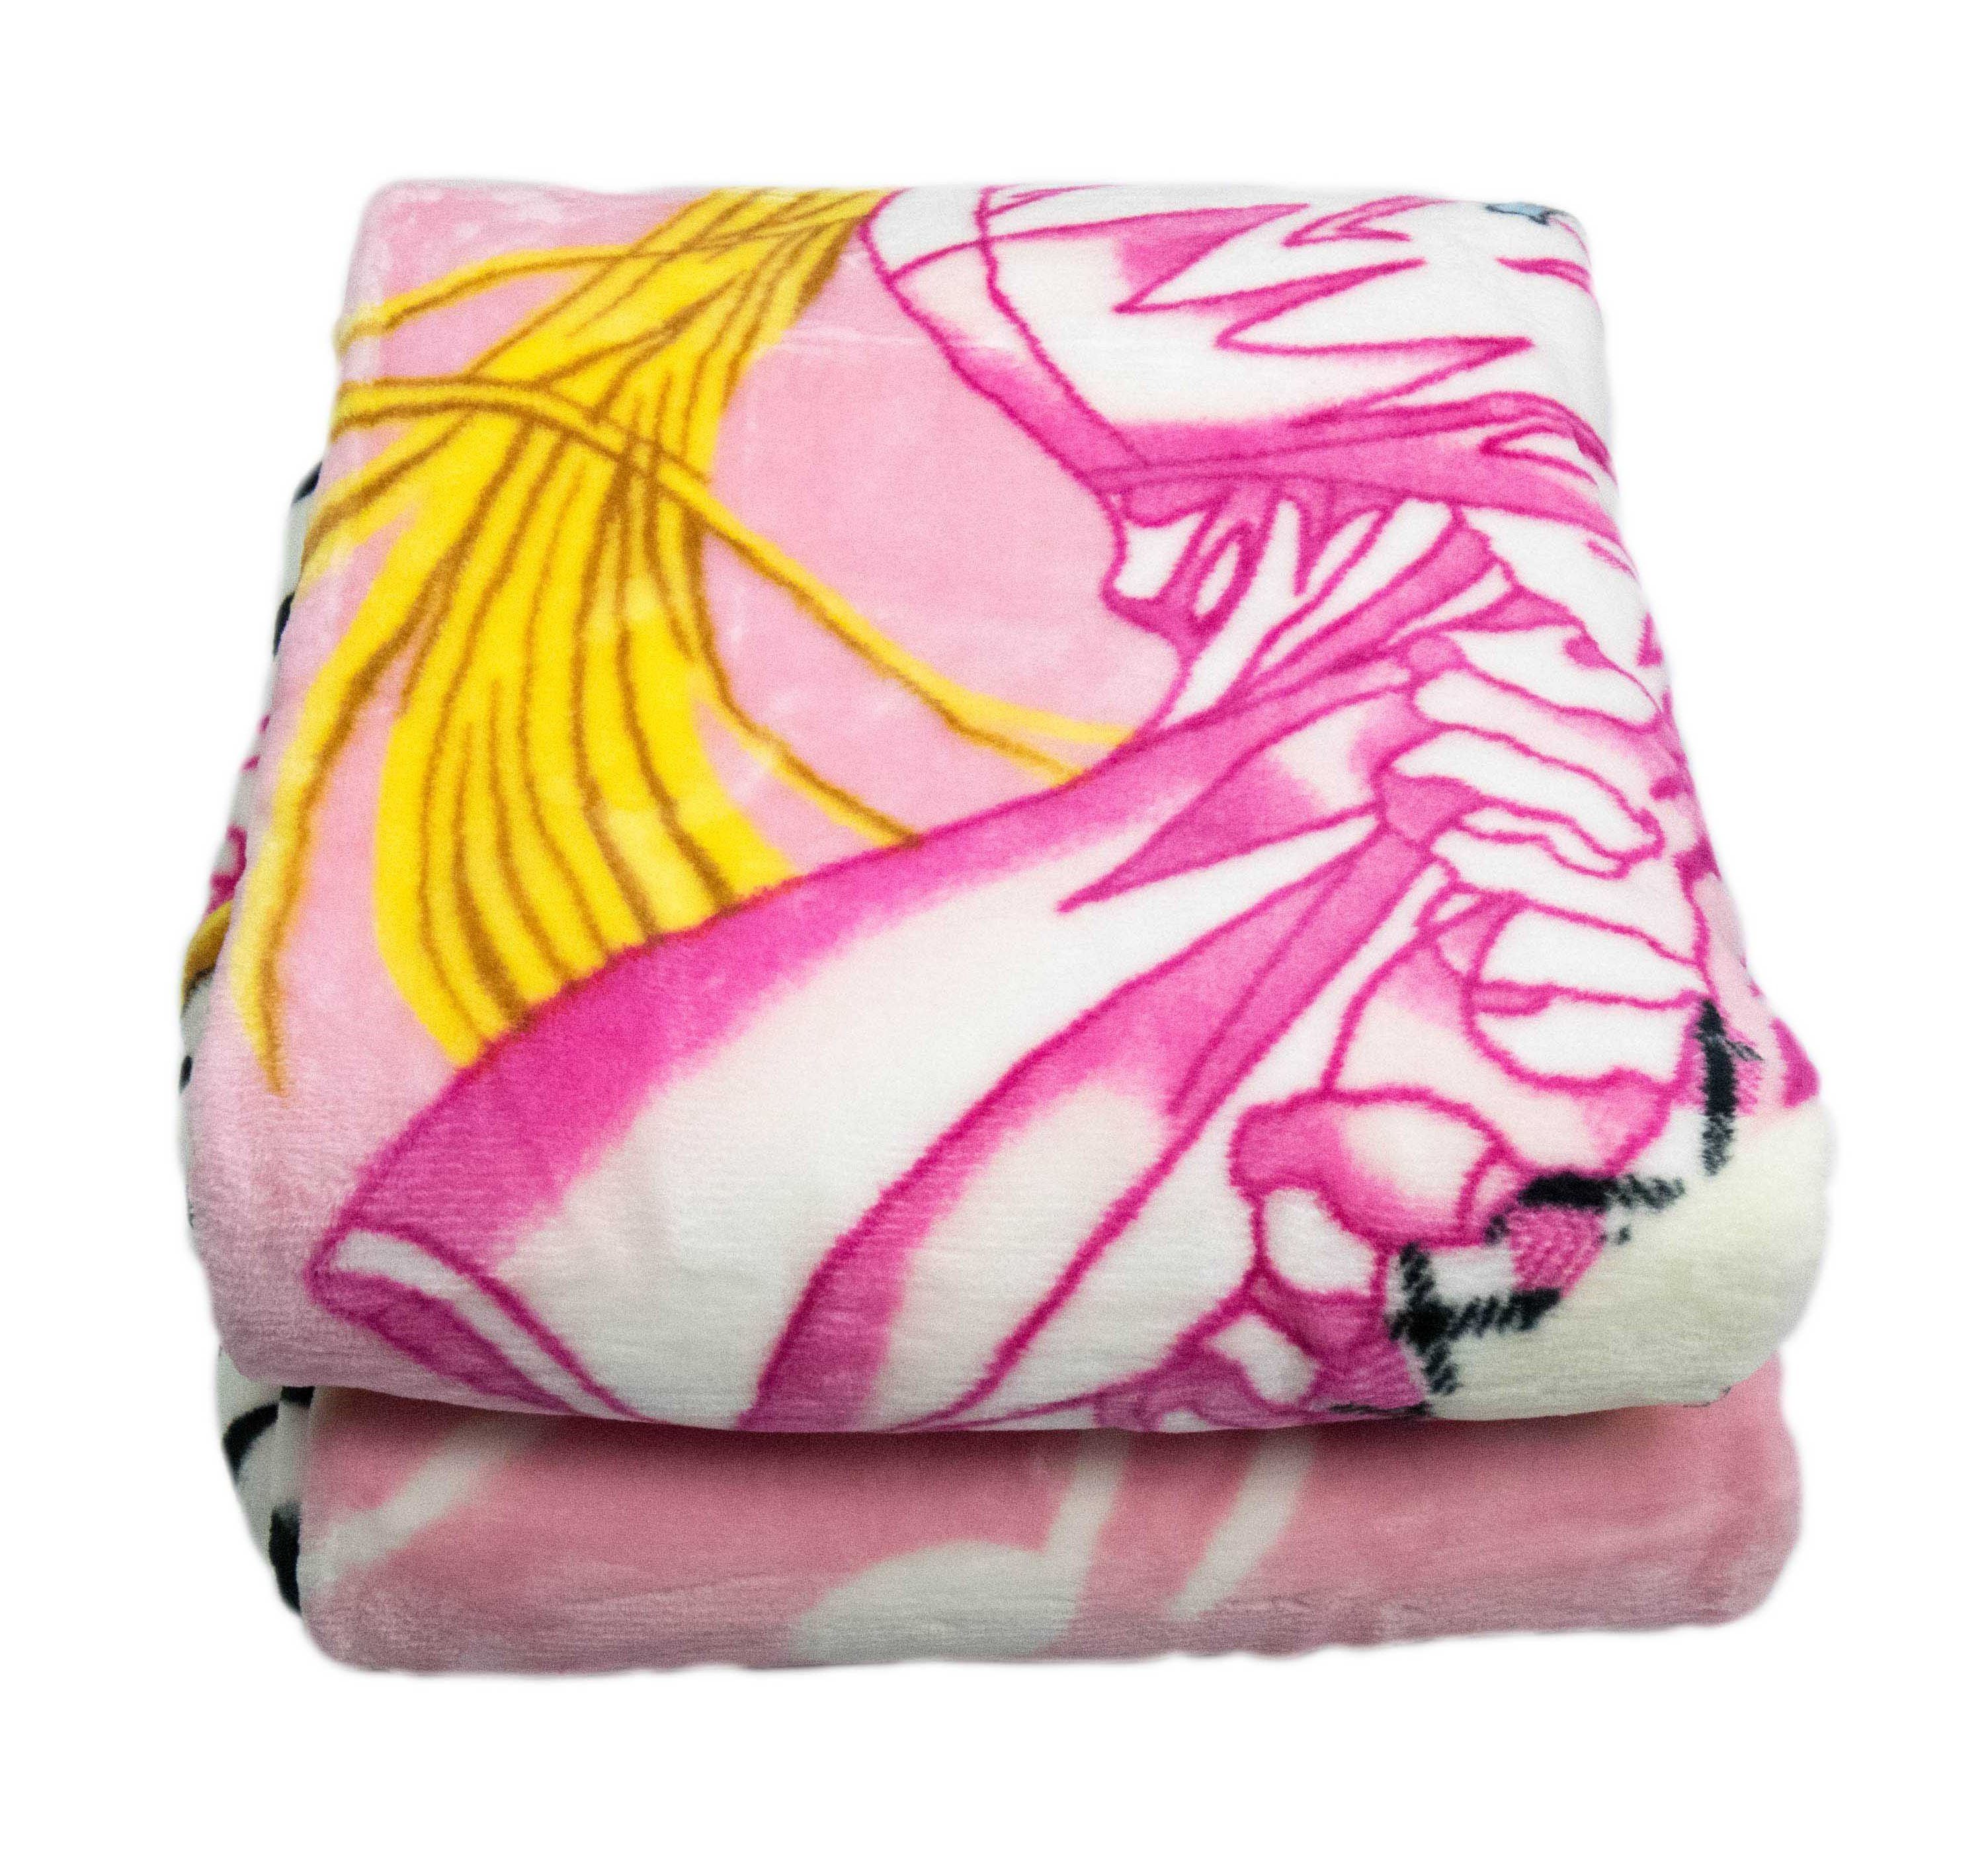 Bunt, Rosa Gelb Decke Prinzessin Pink Design Weiß Kinderdecke Wohndecke Tagesdecke Teppich-Traum Spieldecke Kuscheldecke mit Piano